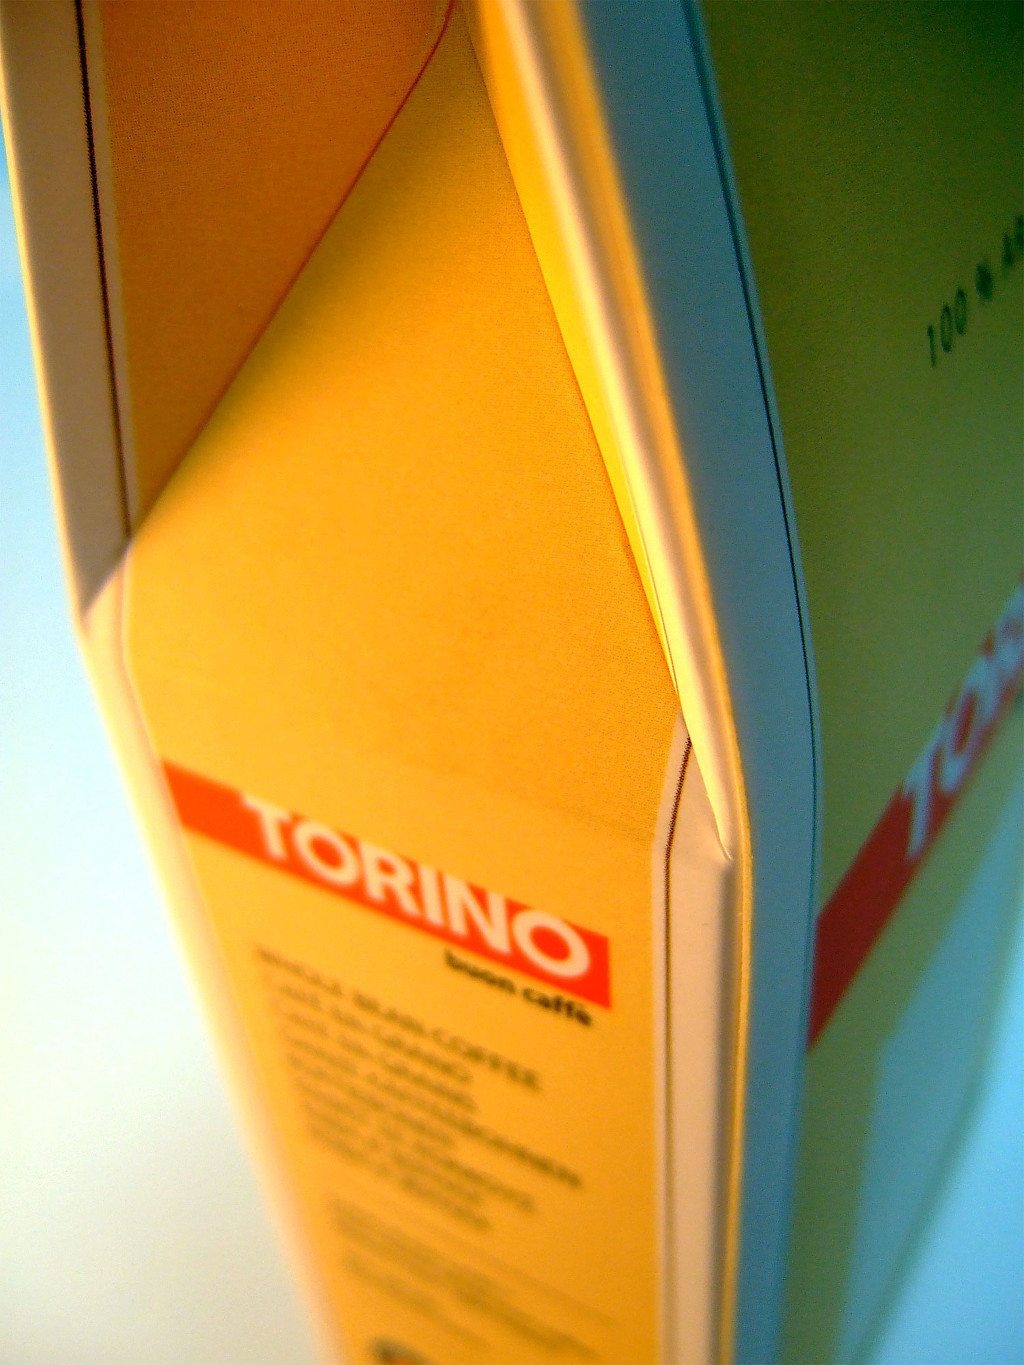 Друк упаковки «Torino». Поліграфія друкарні Макрос, виготовлення упаковки, специфікація 971993-9